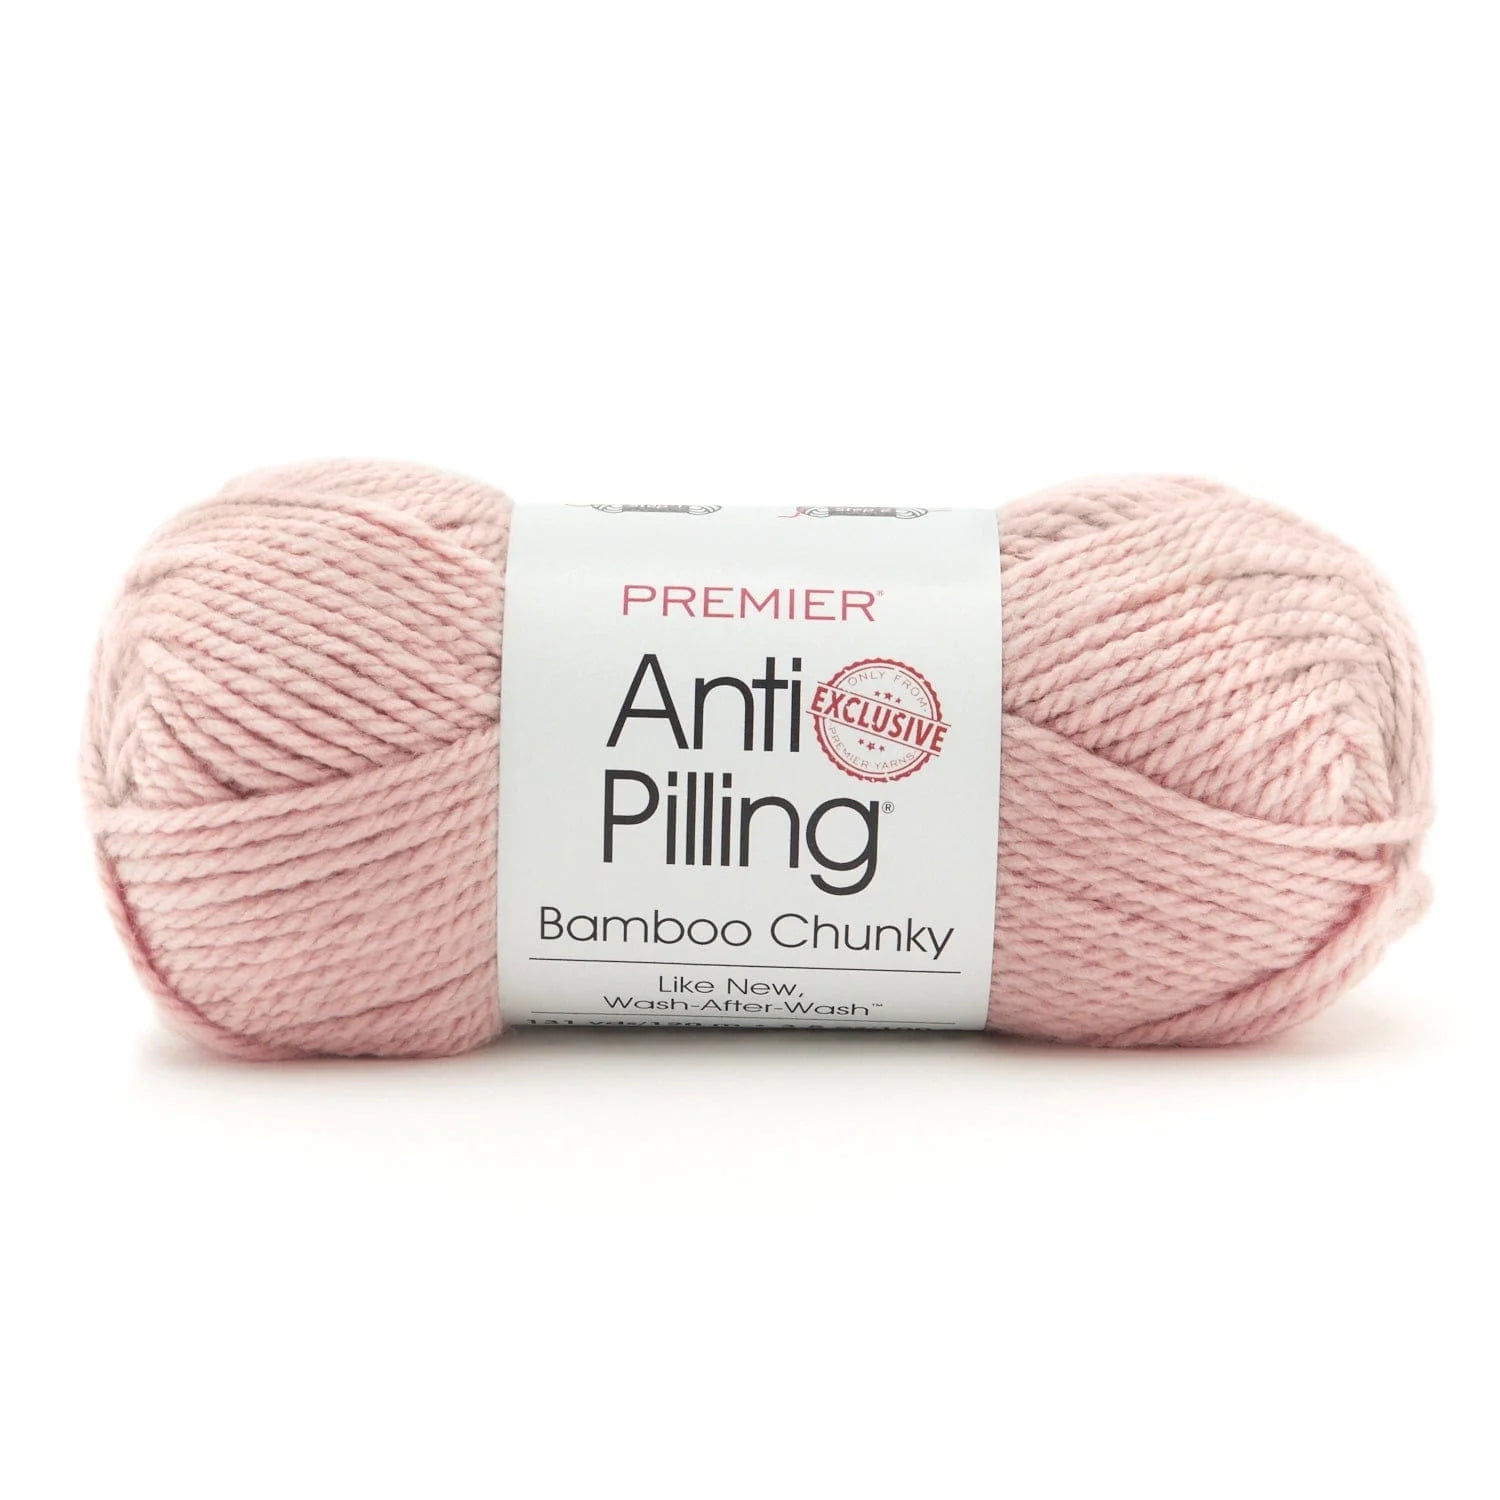 Blue Fat Chenille Yarn,Arm Knitting Yarn,Fluffy Chunky Yarn for Arm  Knitting or Hand Knitting,Chunky Blanket Yarn,500g